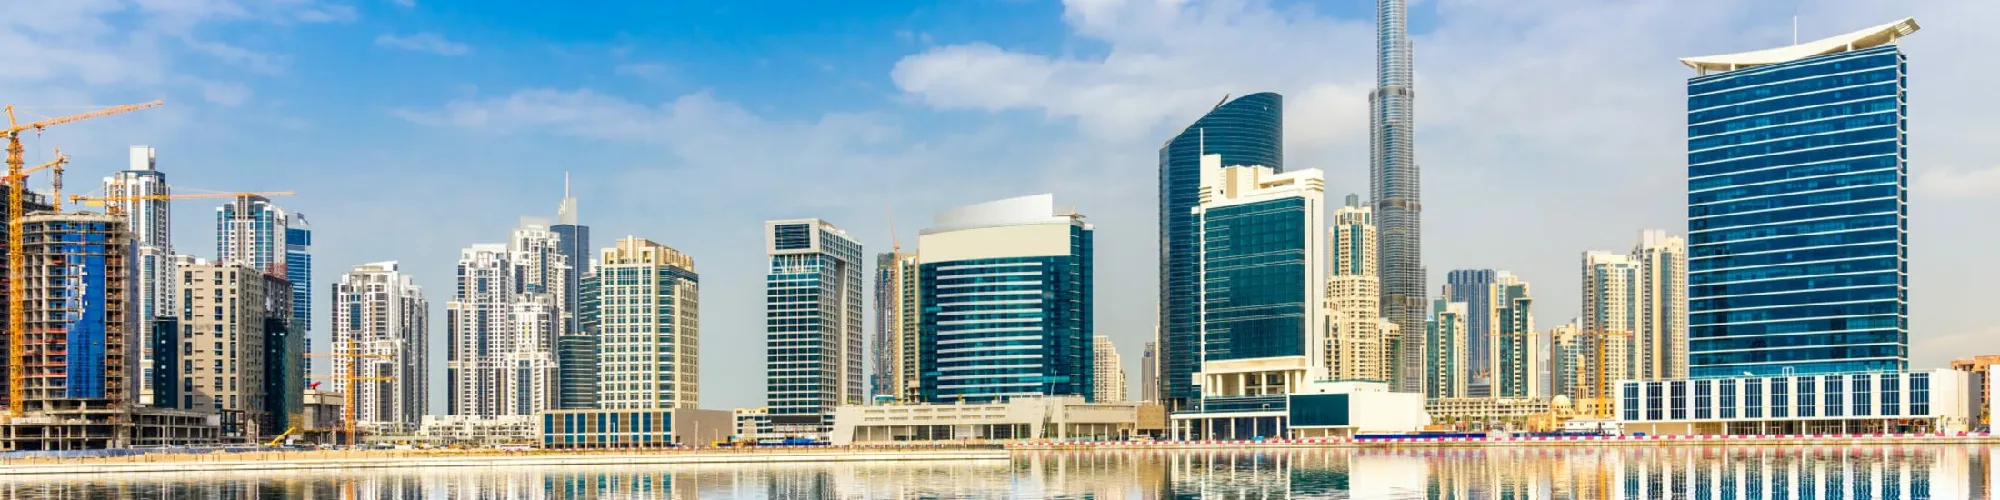 Traumreise in die Vereinigten Arabischen Emirate background image